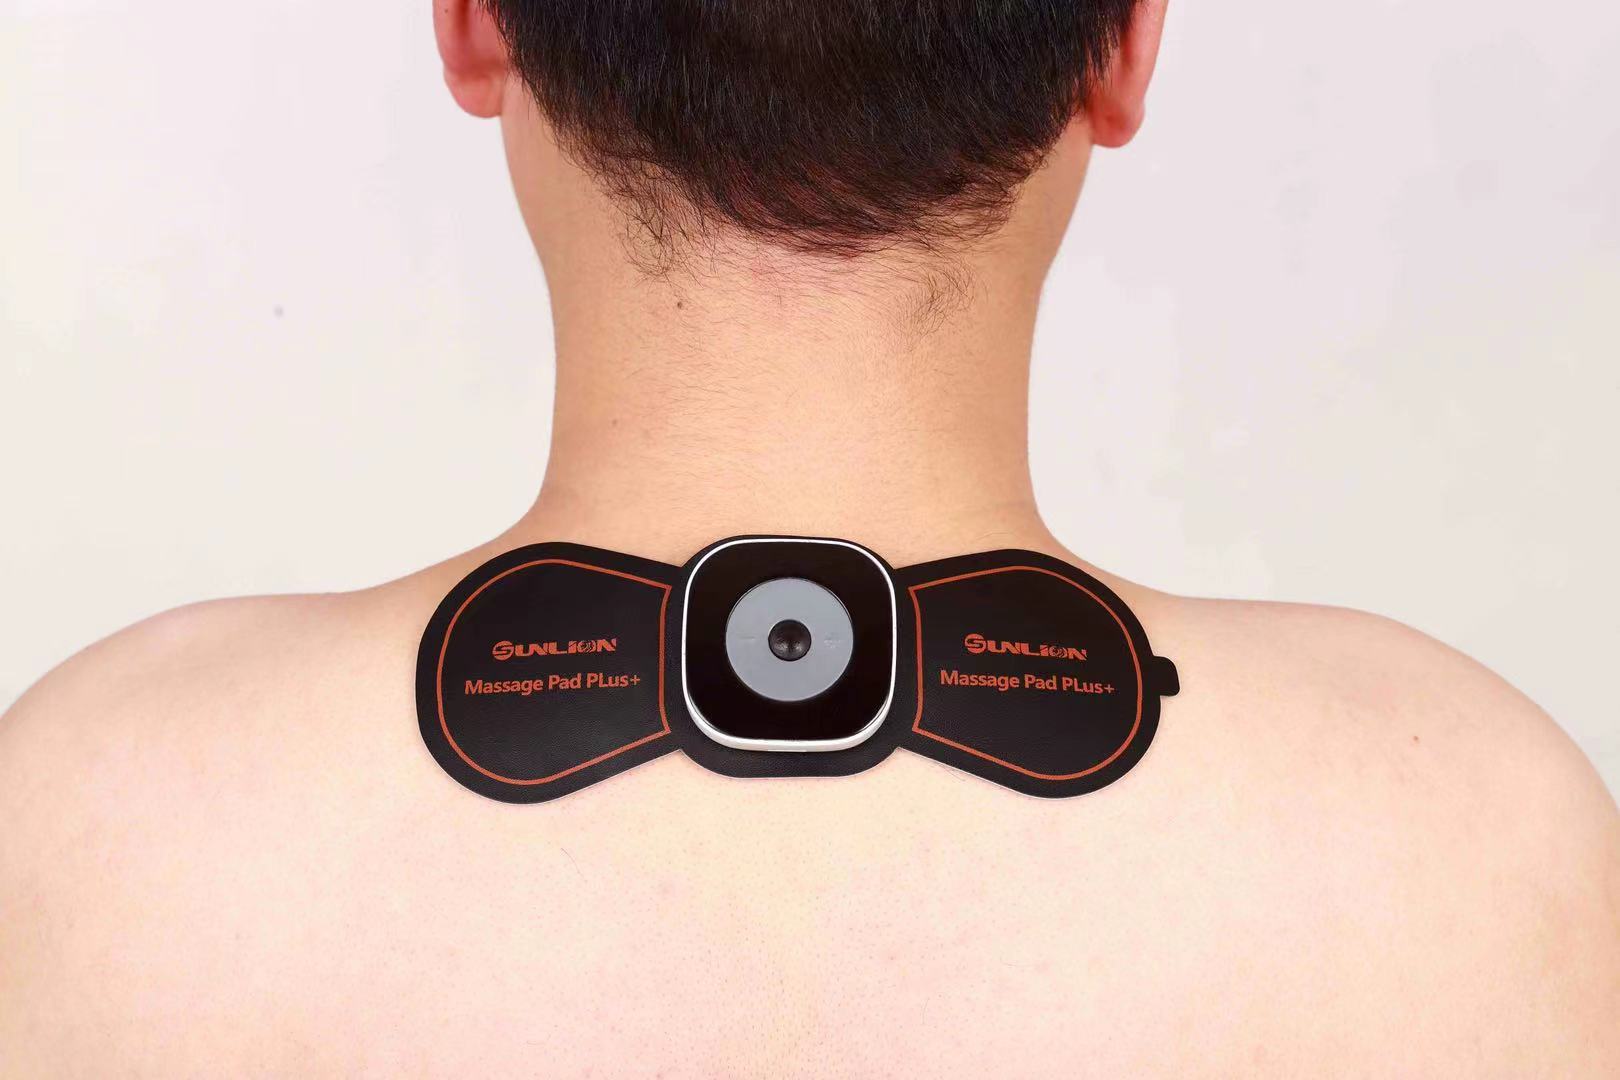 nuevos productos fitness pulso electrónico mini masajeador circulación sanguínea masajeador decenas unidades almohadillas lanzadas al mercado